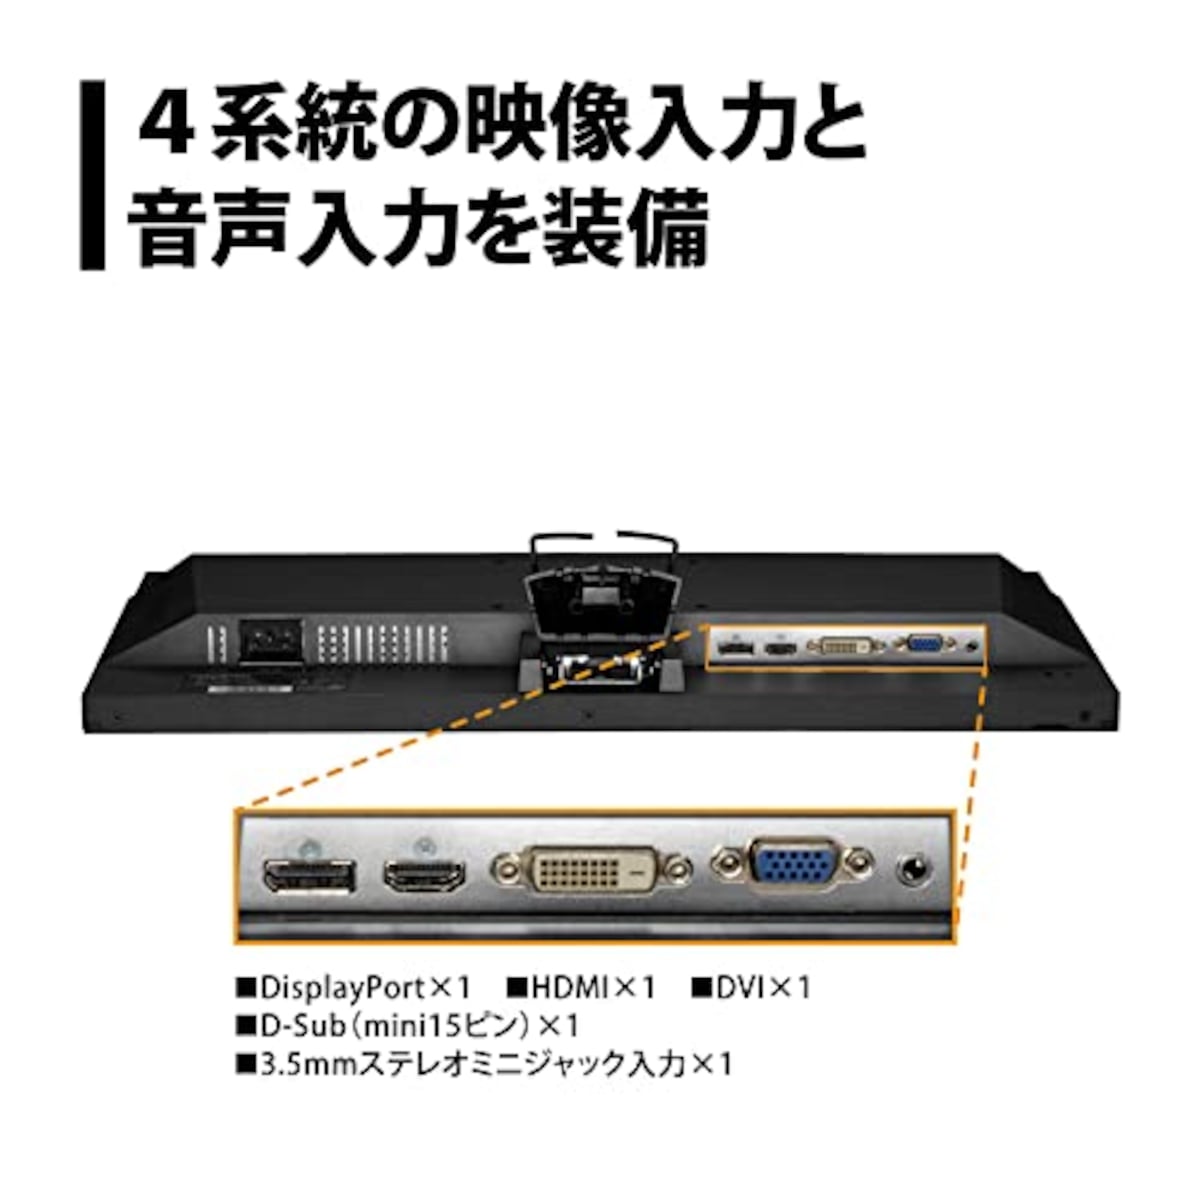  プリンストン モニター 21.5型 (フルHD 1920×1080/HDMI･VGA･DVI･DisplayPort端子各1/ブルーライト･ちらつき軽減/広視野角/スピーカー内蔵) ブラック PTFBFH-22W画像4 